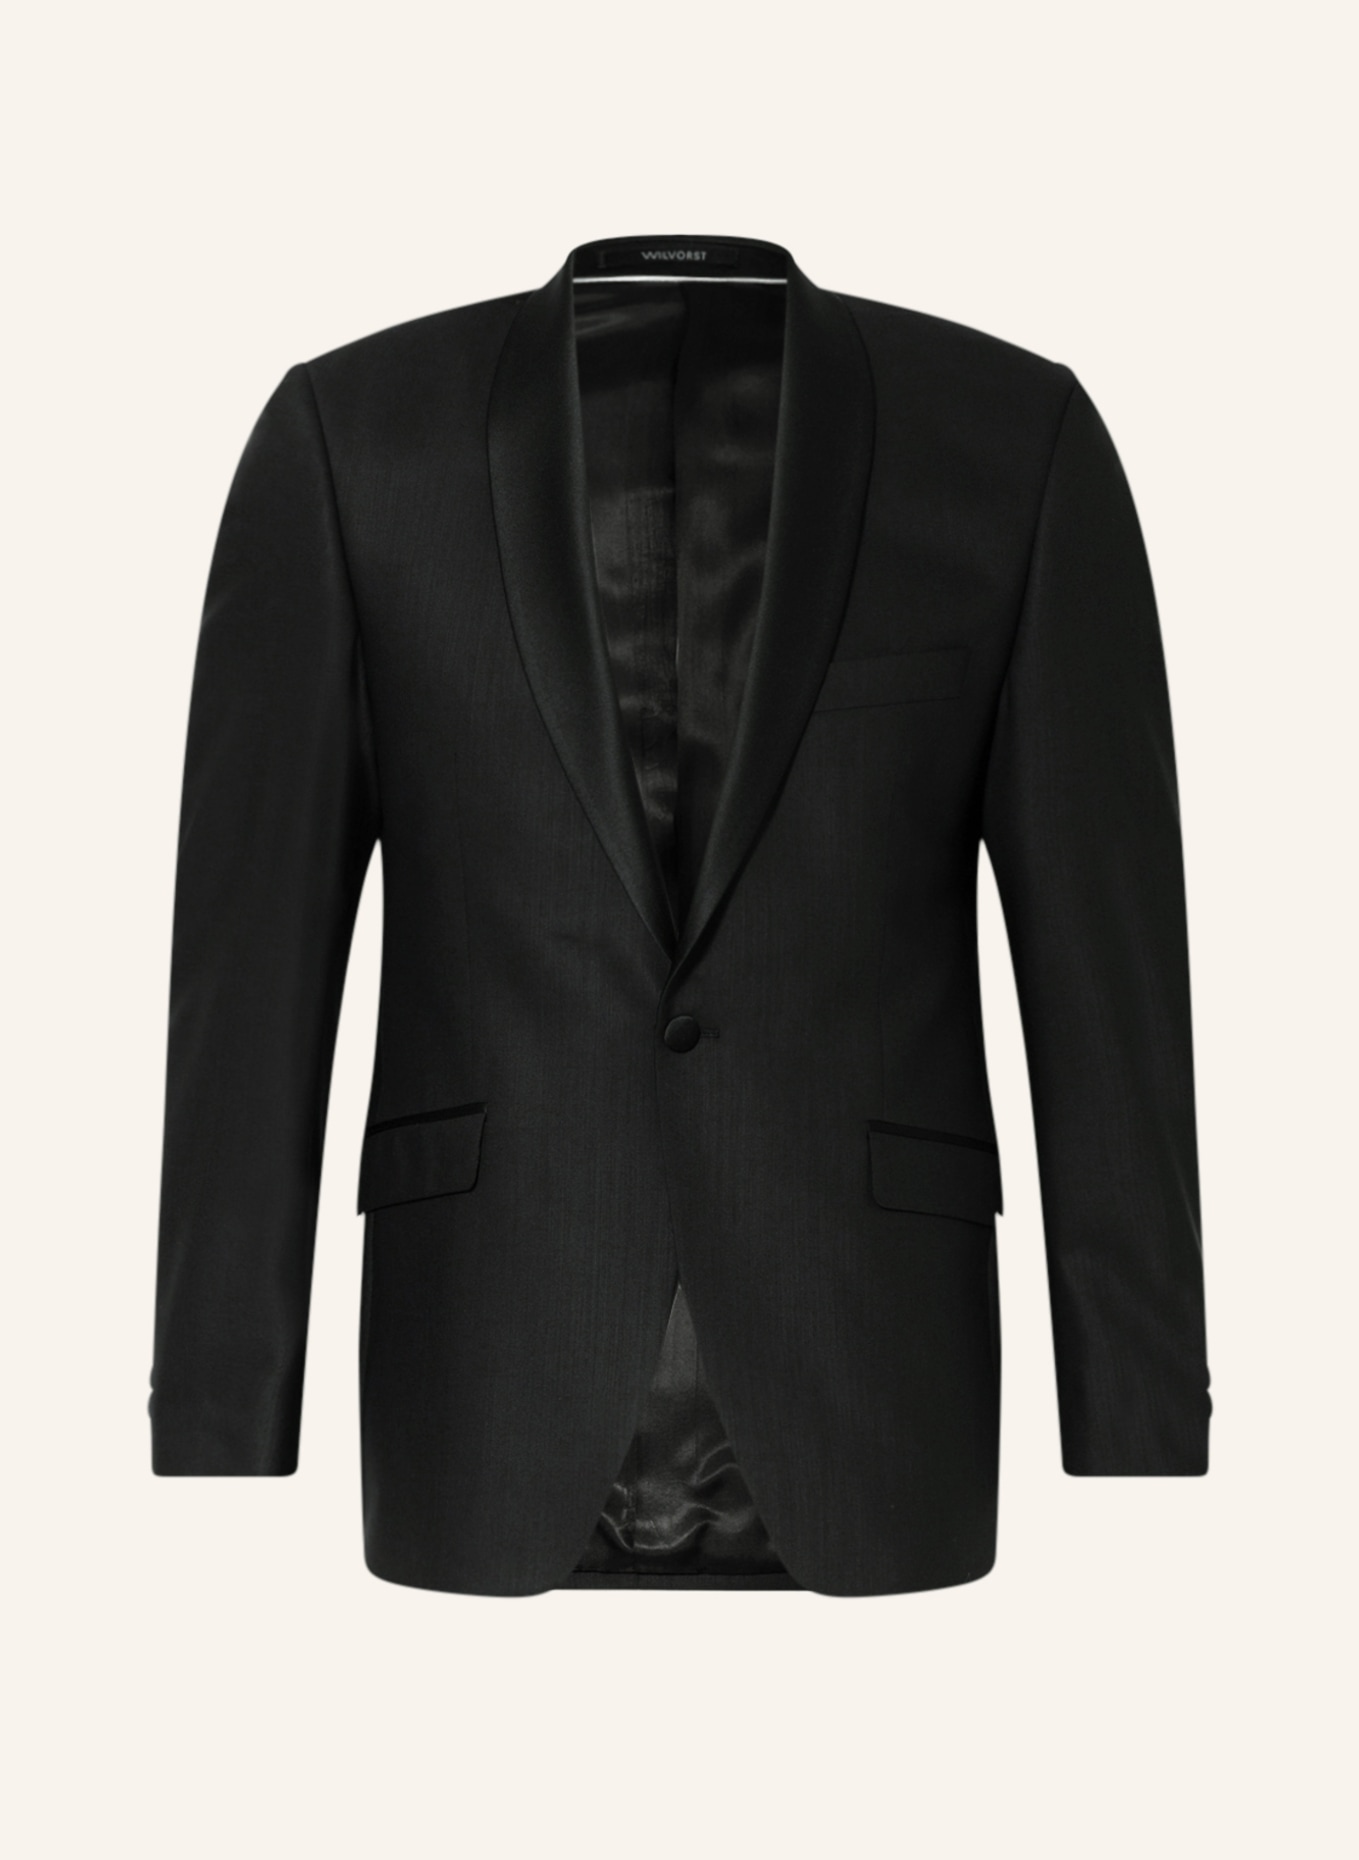 WILVORST Smoking jacket AFTERSIX slim fit, Color: 001 SCHWARZ (Image 1)